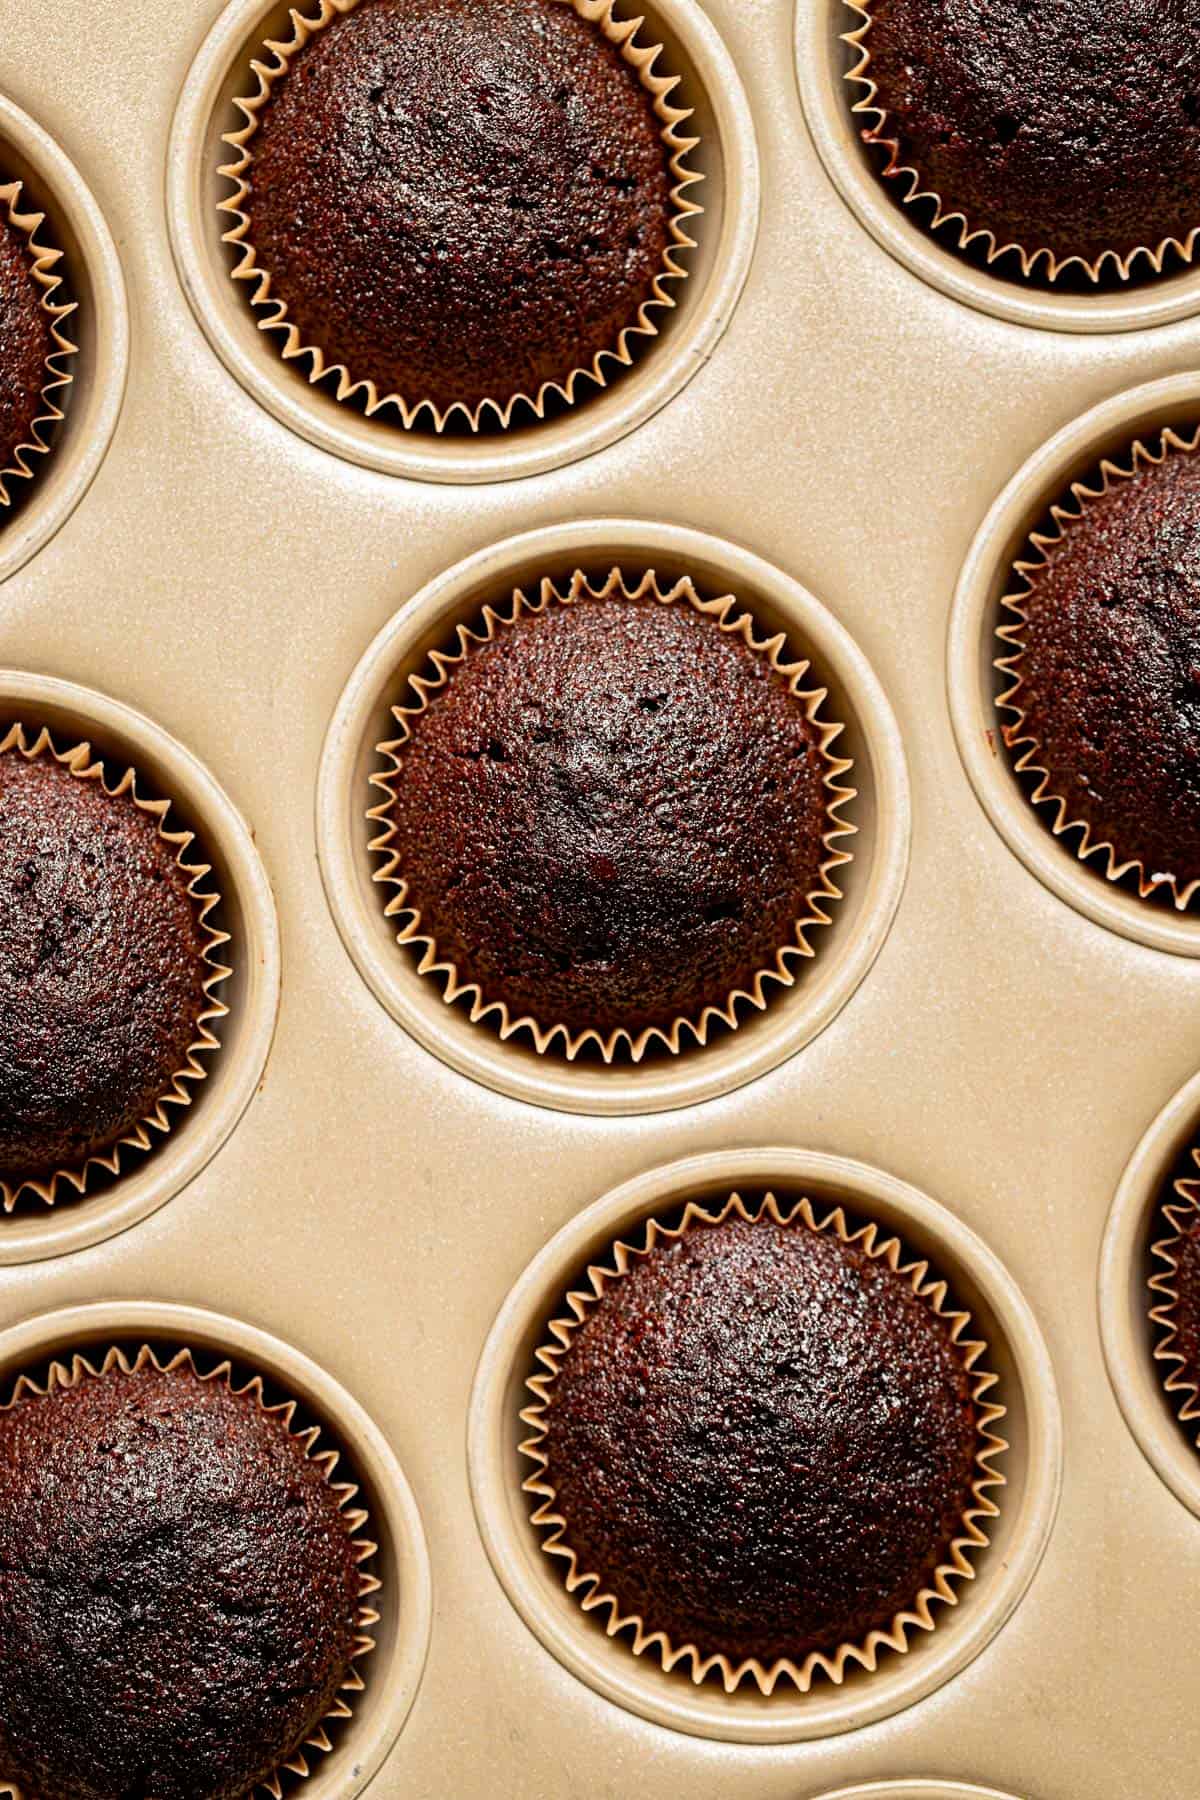 baked cupcakes in cupcake pan.